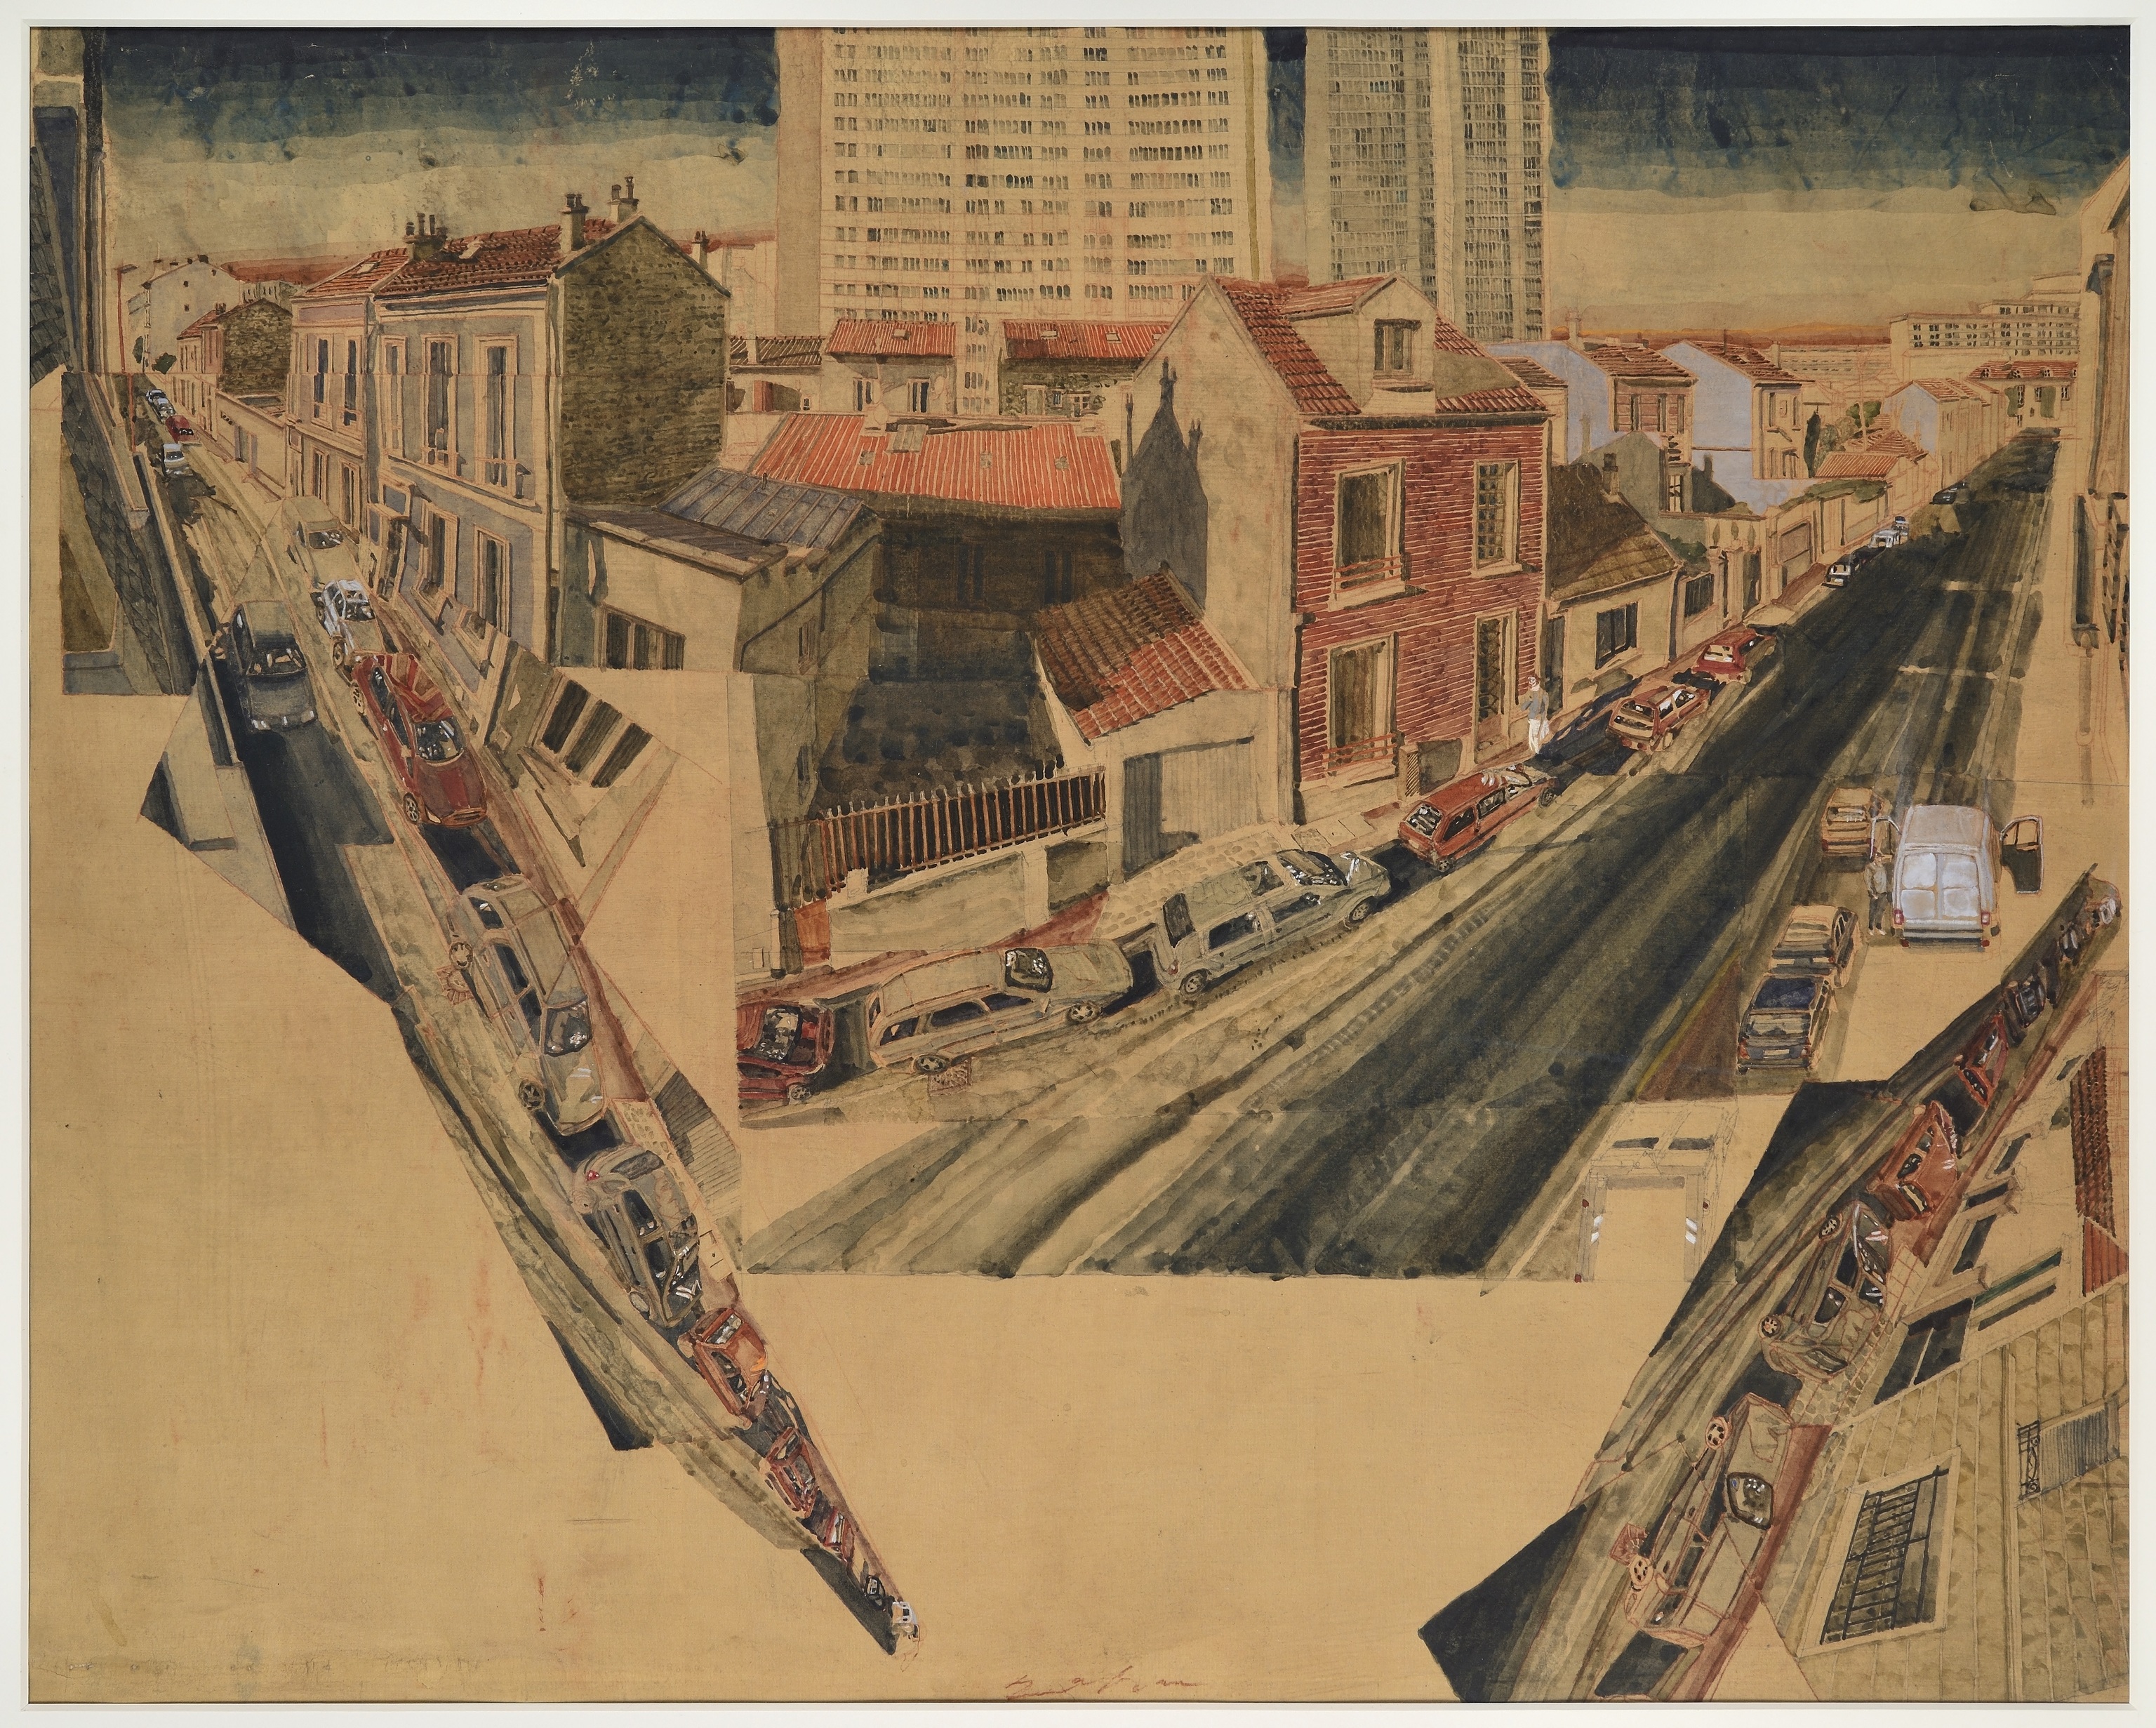 Una vista de la ciudad de Malakoff pintada en acuarela sobre seda (2014).